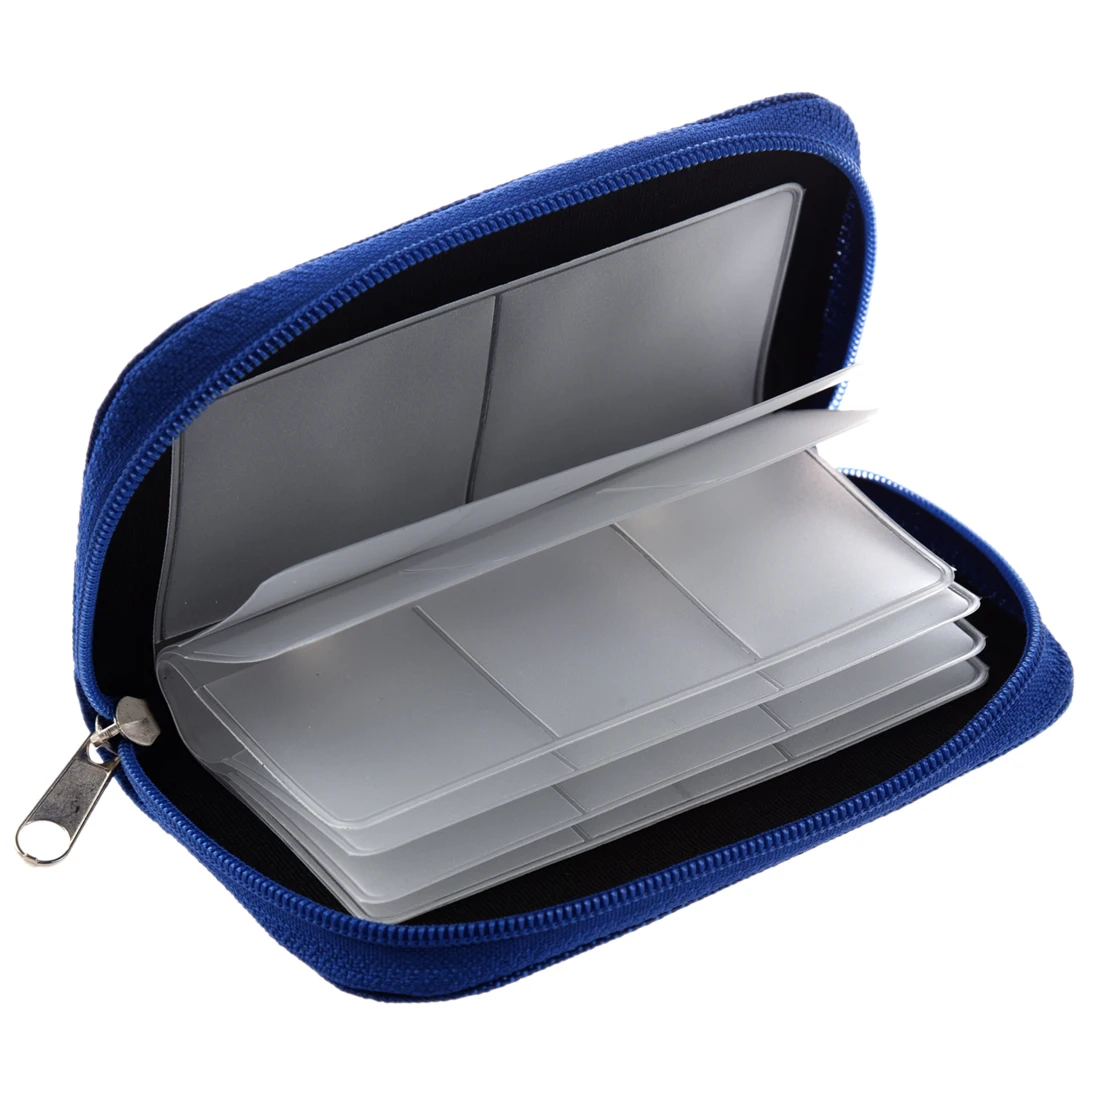 Чехол сумка для 22 карты памяти mini SD XD синий